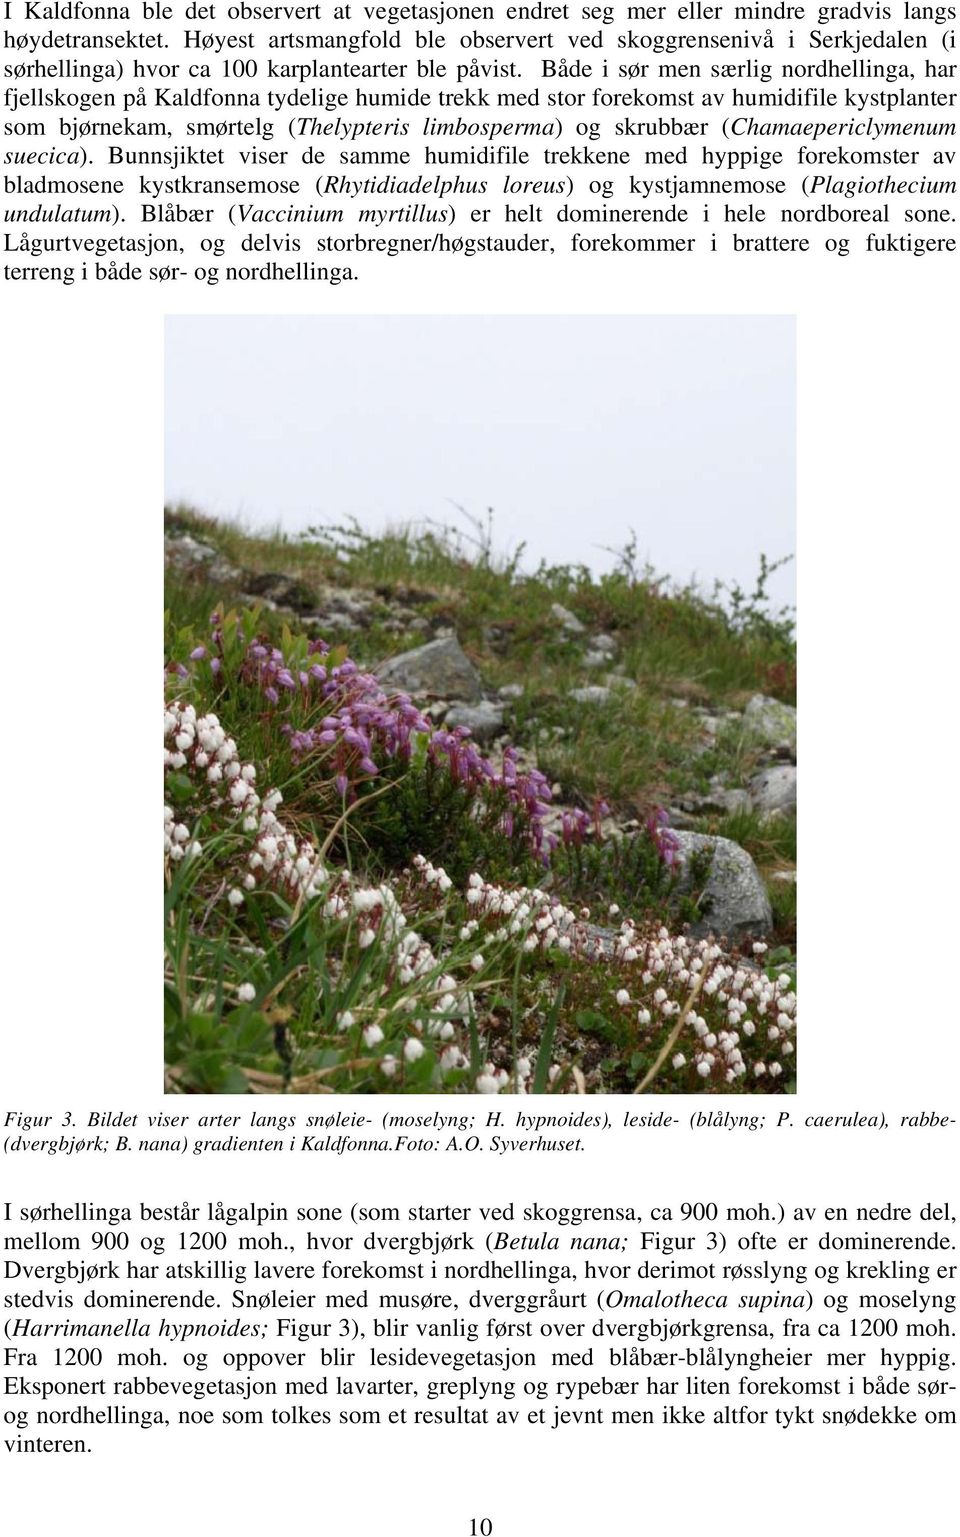 Både i sør men særlig nordhellinga, har fjellskogen på Kaldfonna tydelige humide trekk med stor forekomst av humidifile kystplanter som bjørnekam, smørtelg (Thelypteris limbosperma) og skrubbær